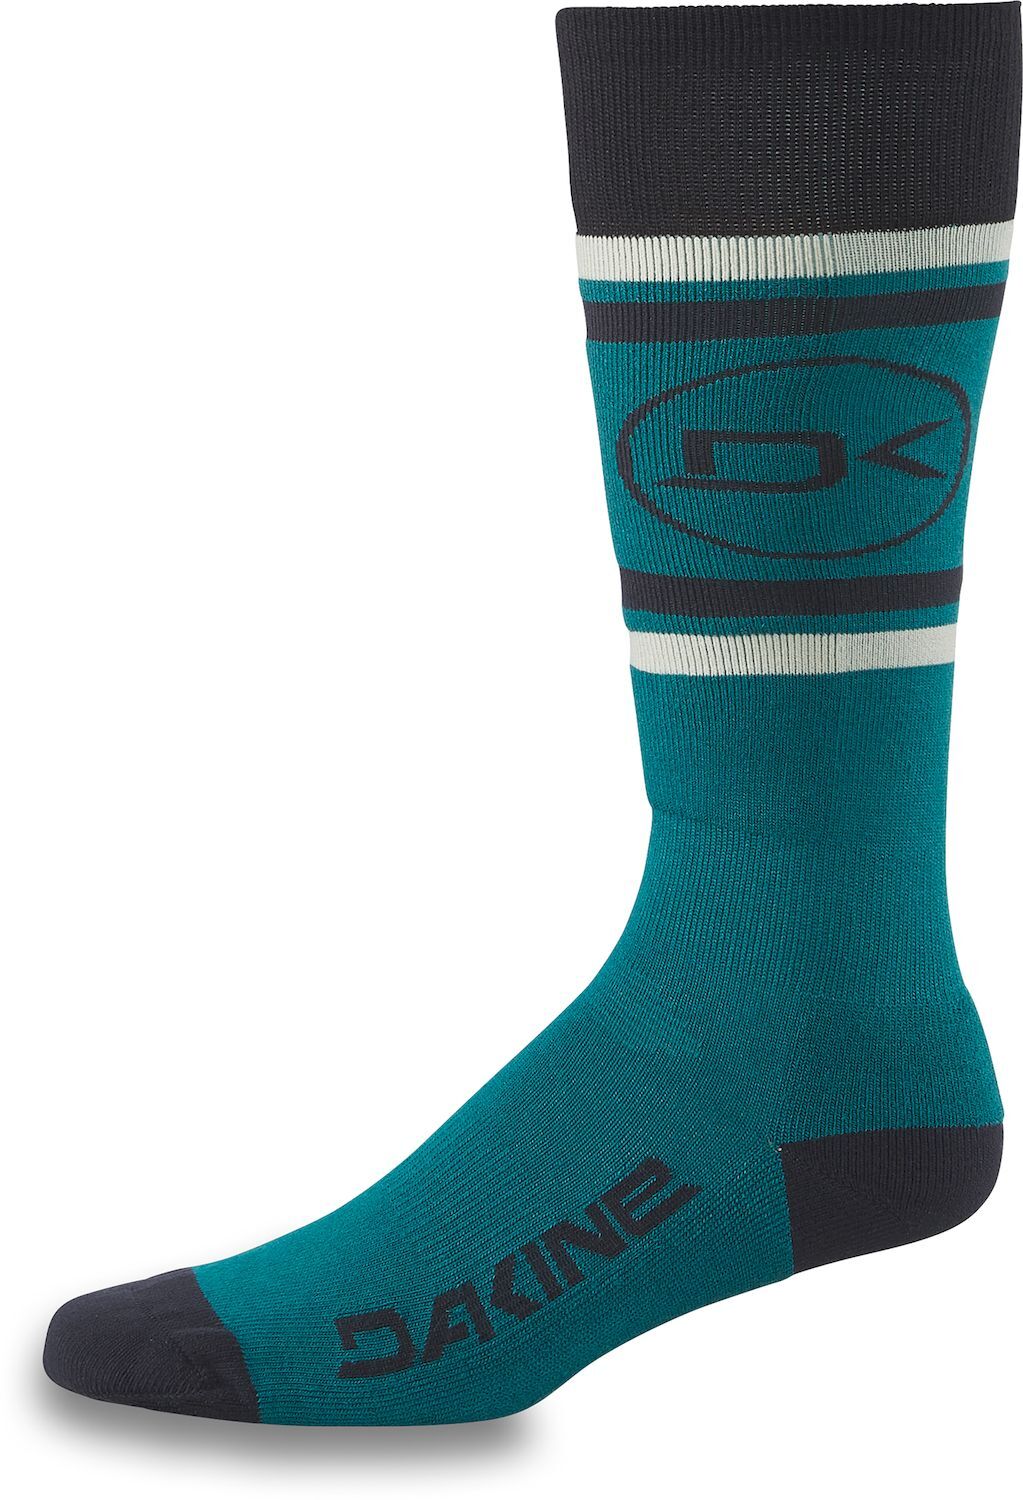 Dakine Women's Freeride Sock - Ski socks - Women's